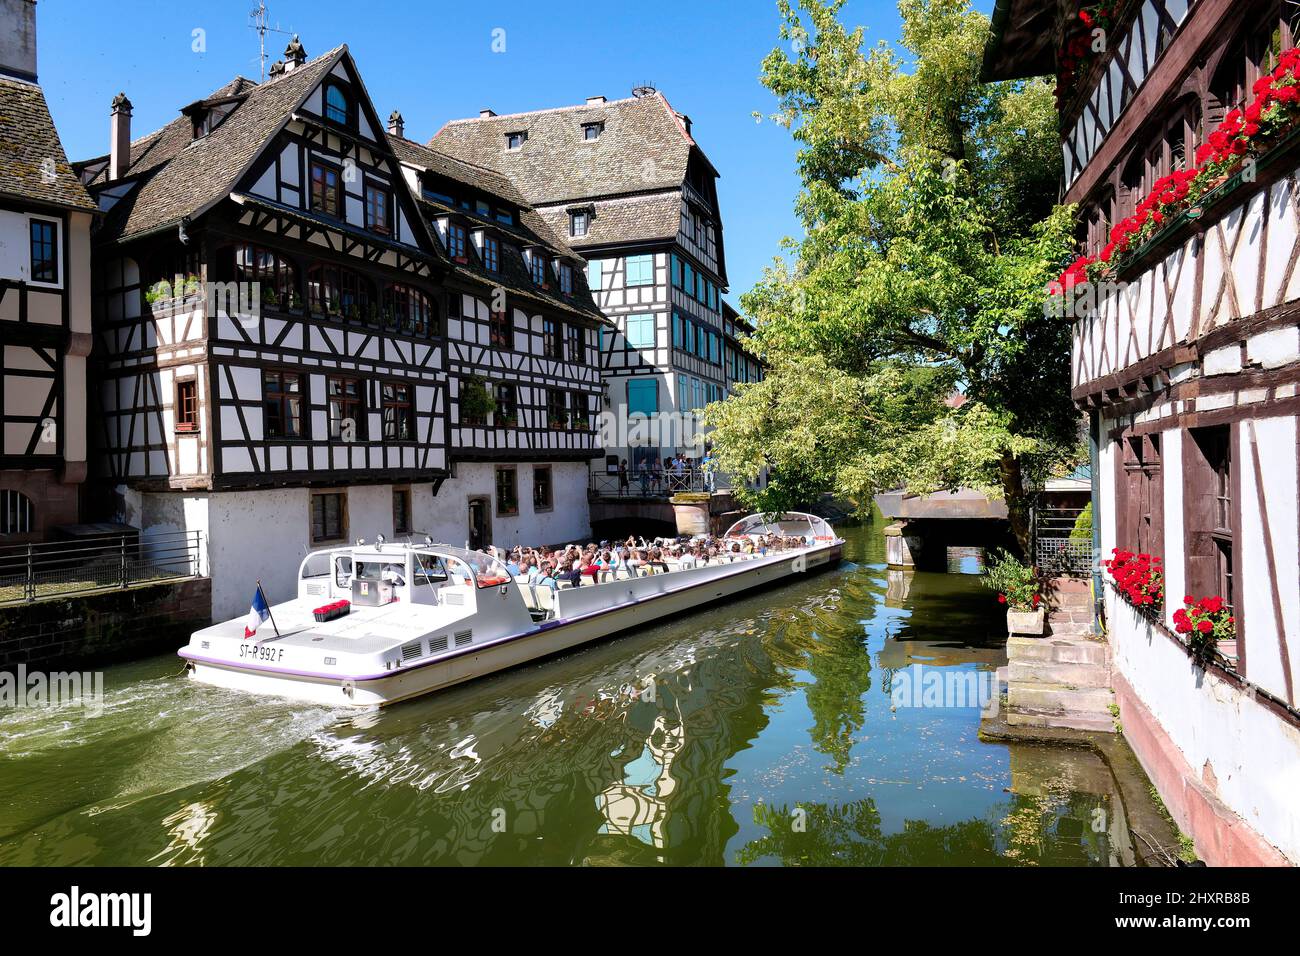 Francia, Strasburgo, il centro storico dichiarato Patrimonio dell'Umanità dall'UNESCO, la Petite France, intorno a piazza Benjamin Zix. Foto Stock